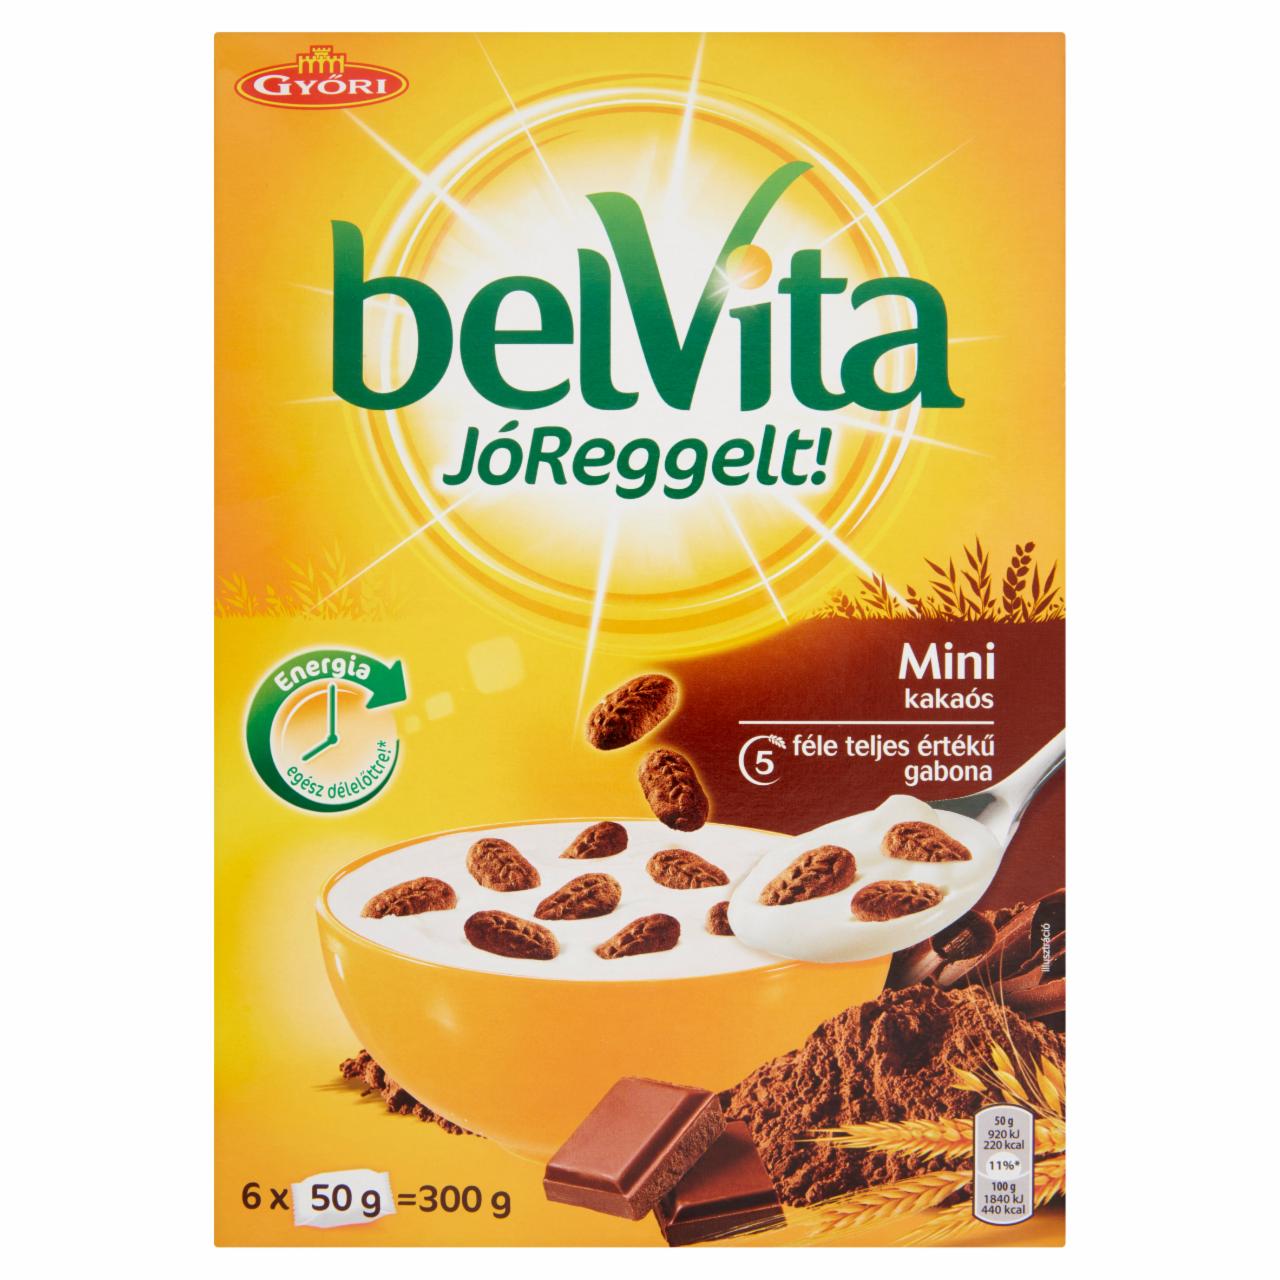 Képek - belVita JóReggelt! Mini kakaós gabonás omlós minikeksz csokoládé darabokkal 6 x 50 g